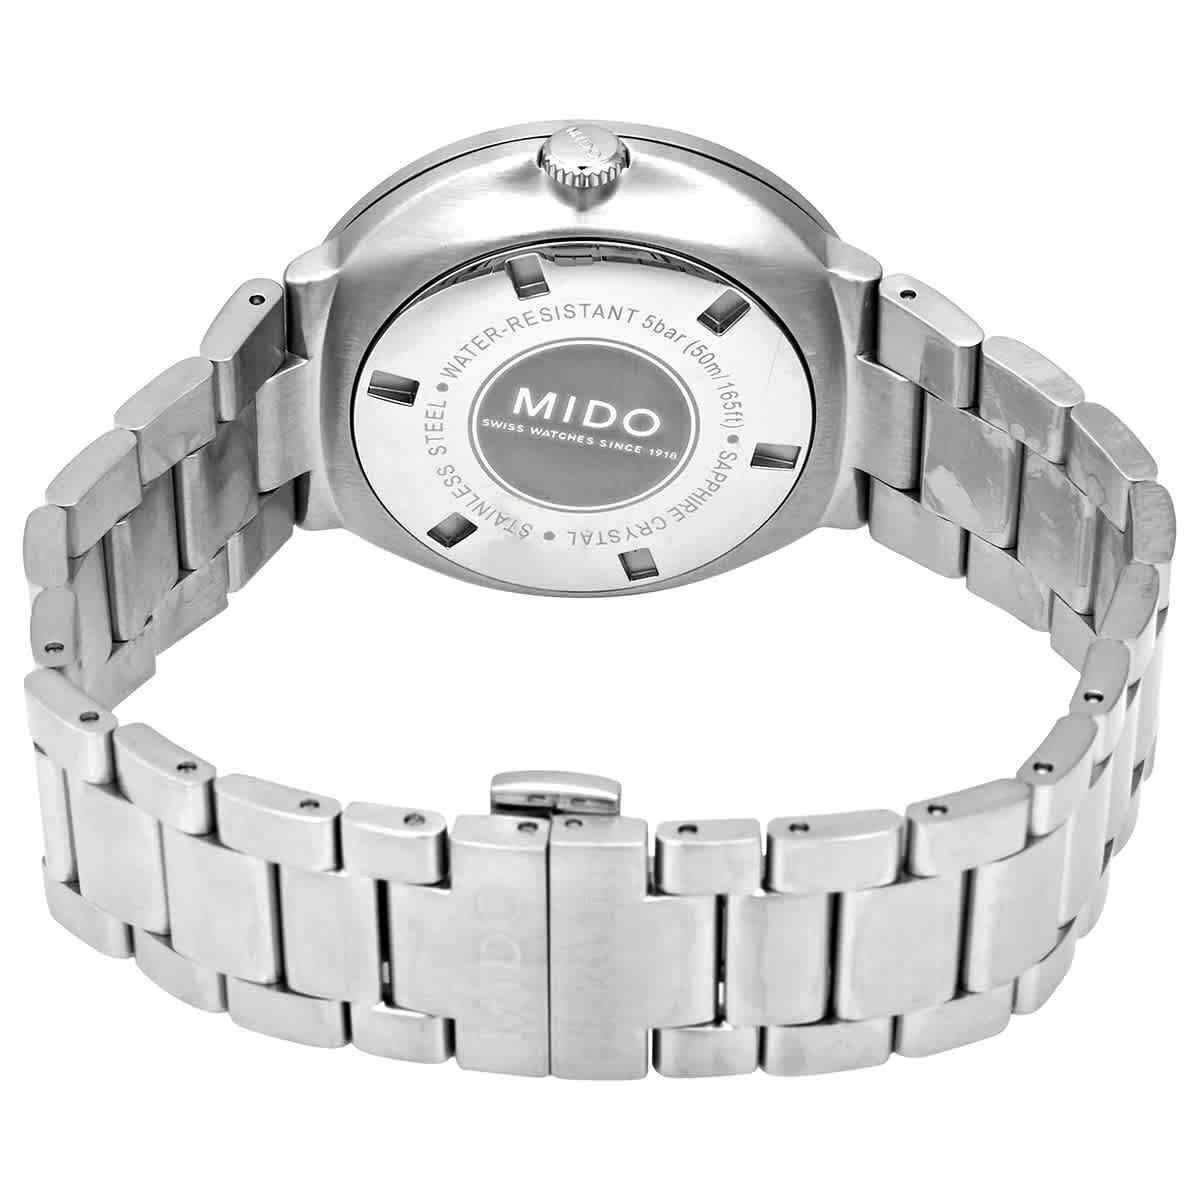 Mido Commander Datoday Automatico Silver M014.430.11.031.80